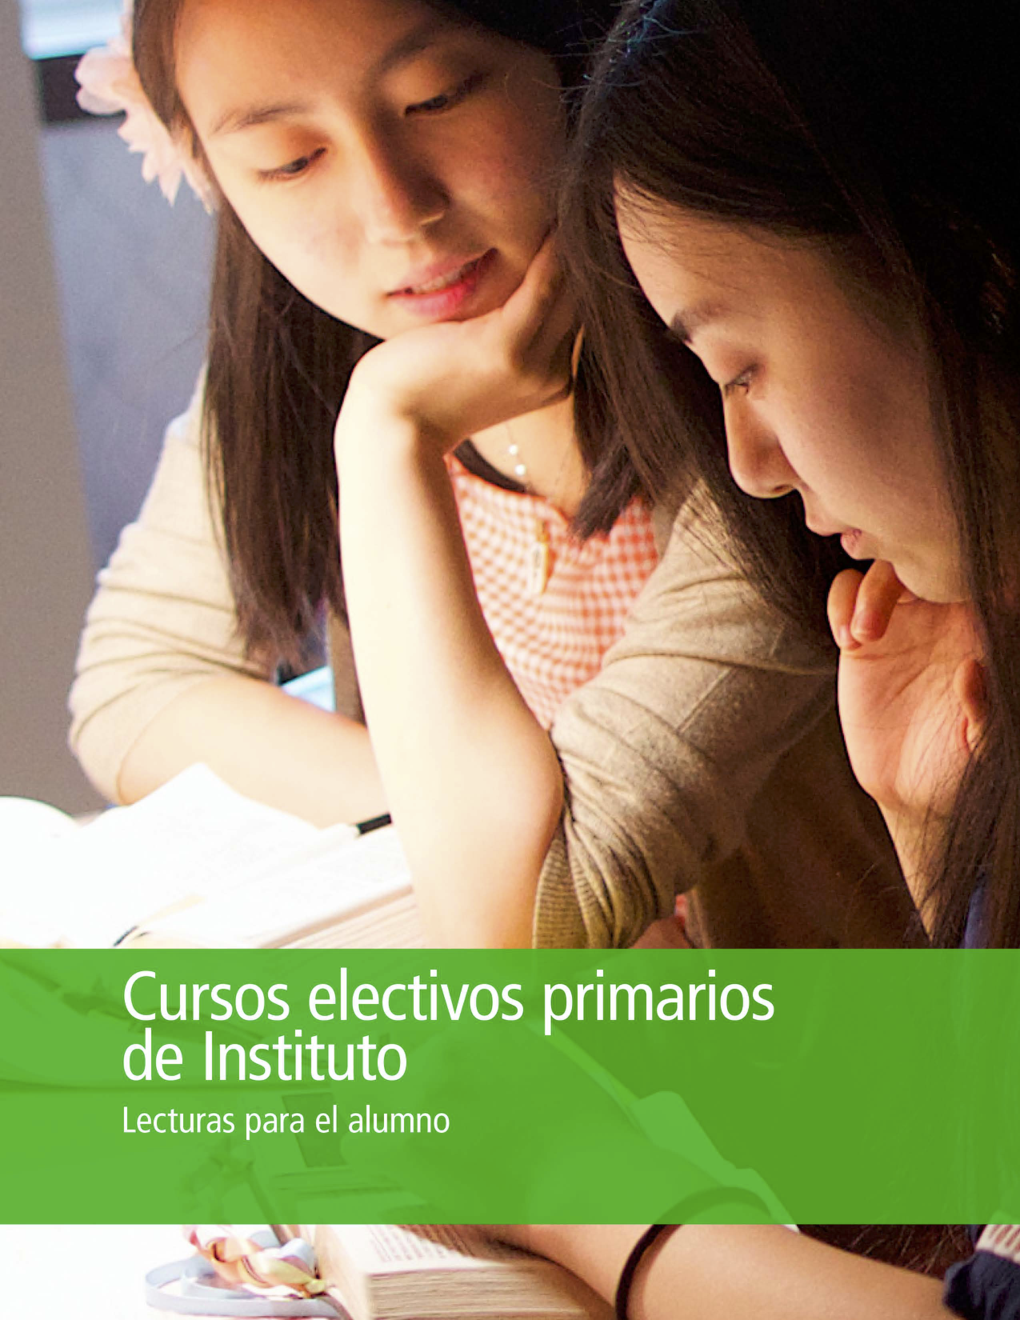 Lecturas electivas primarias de Instituto para el alumno